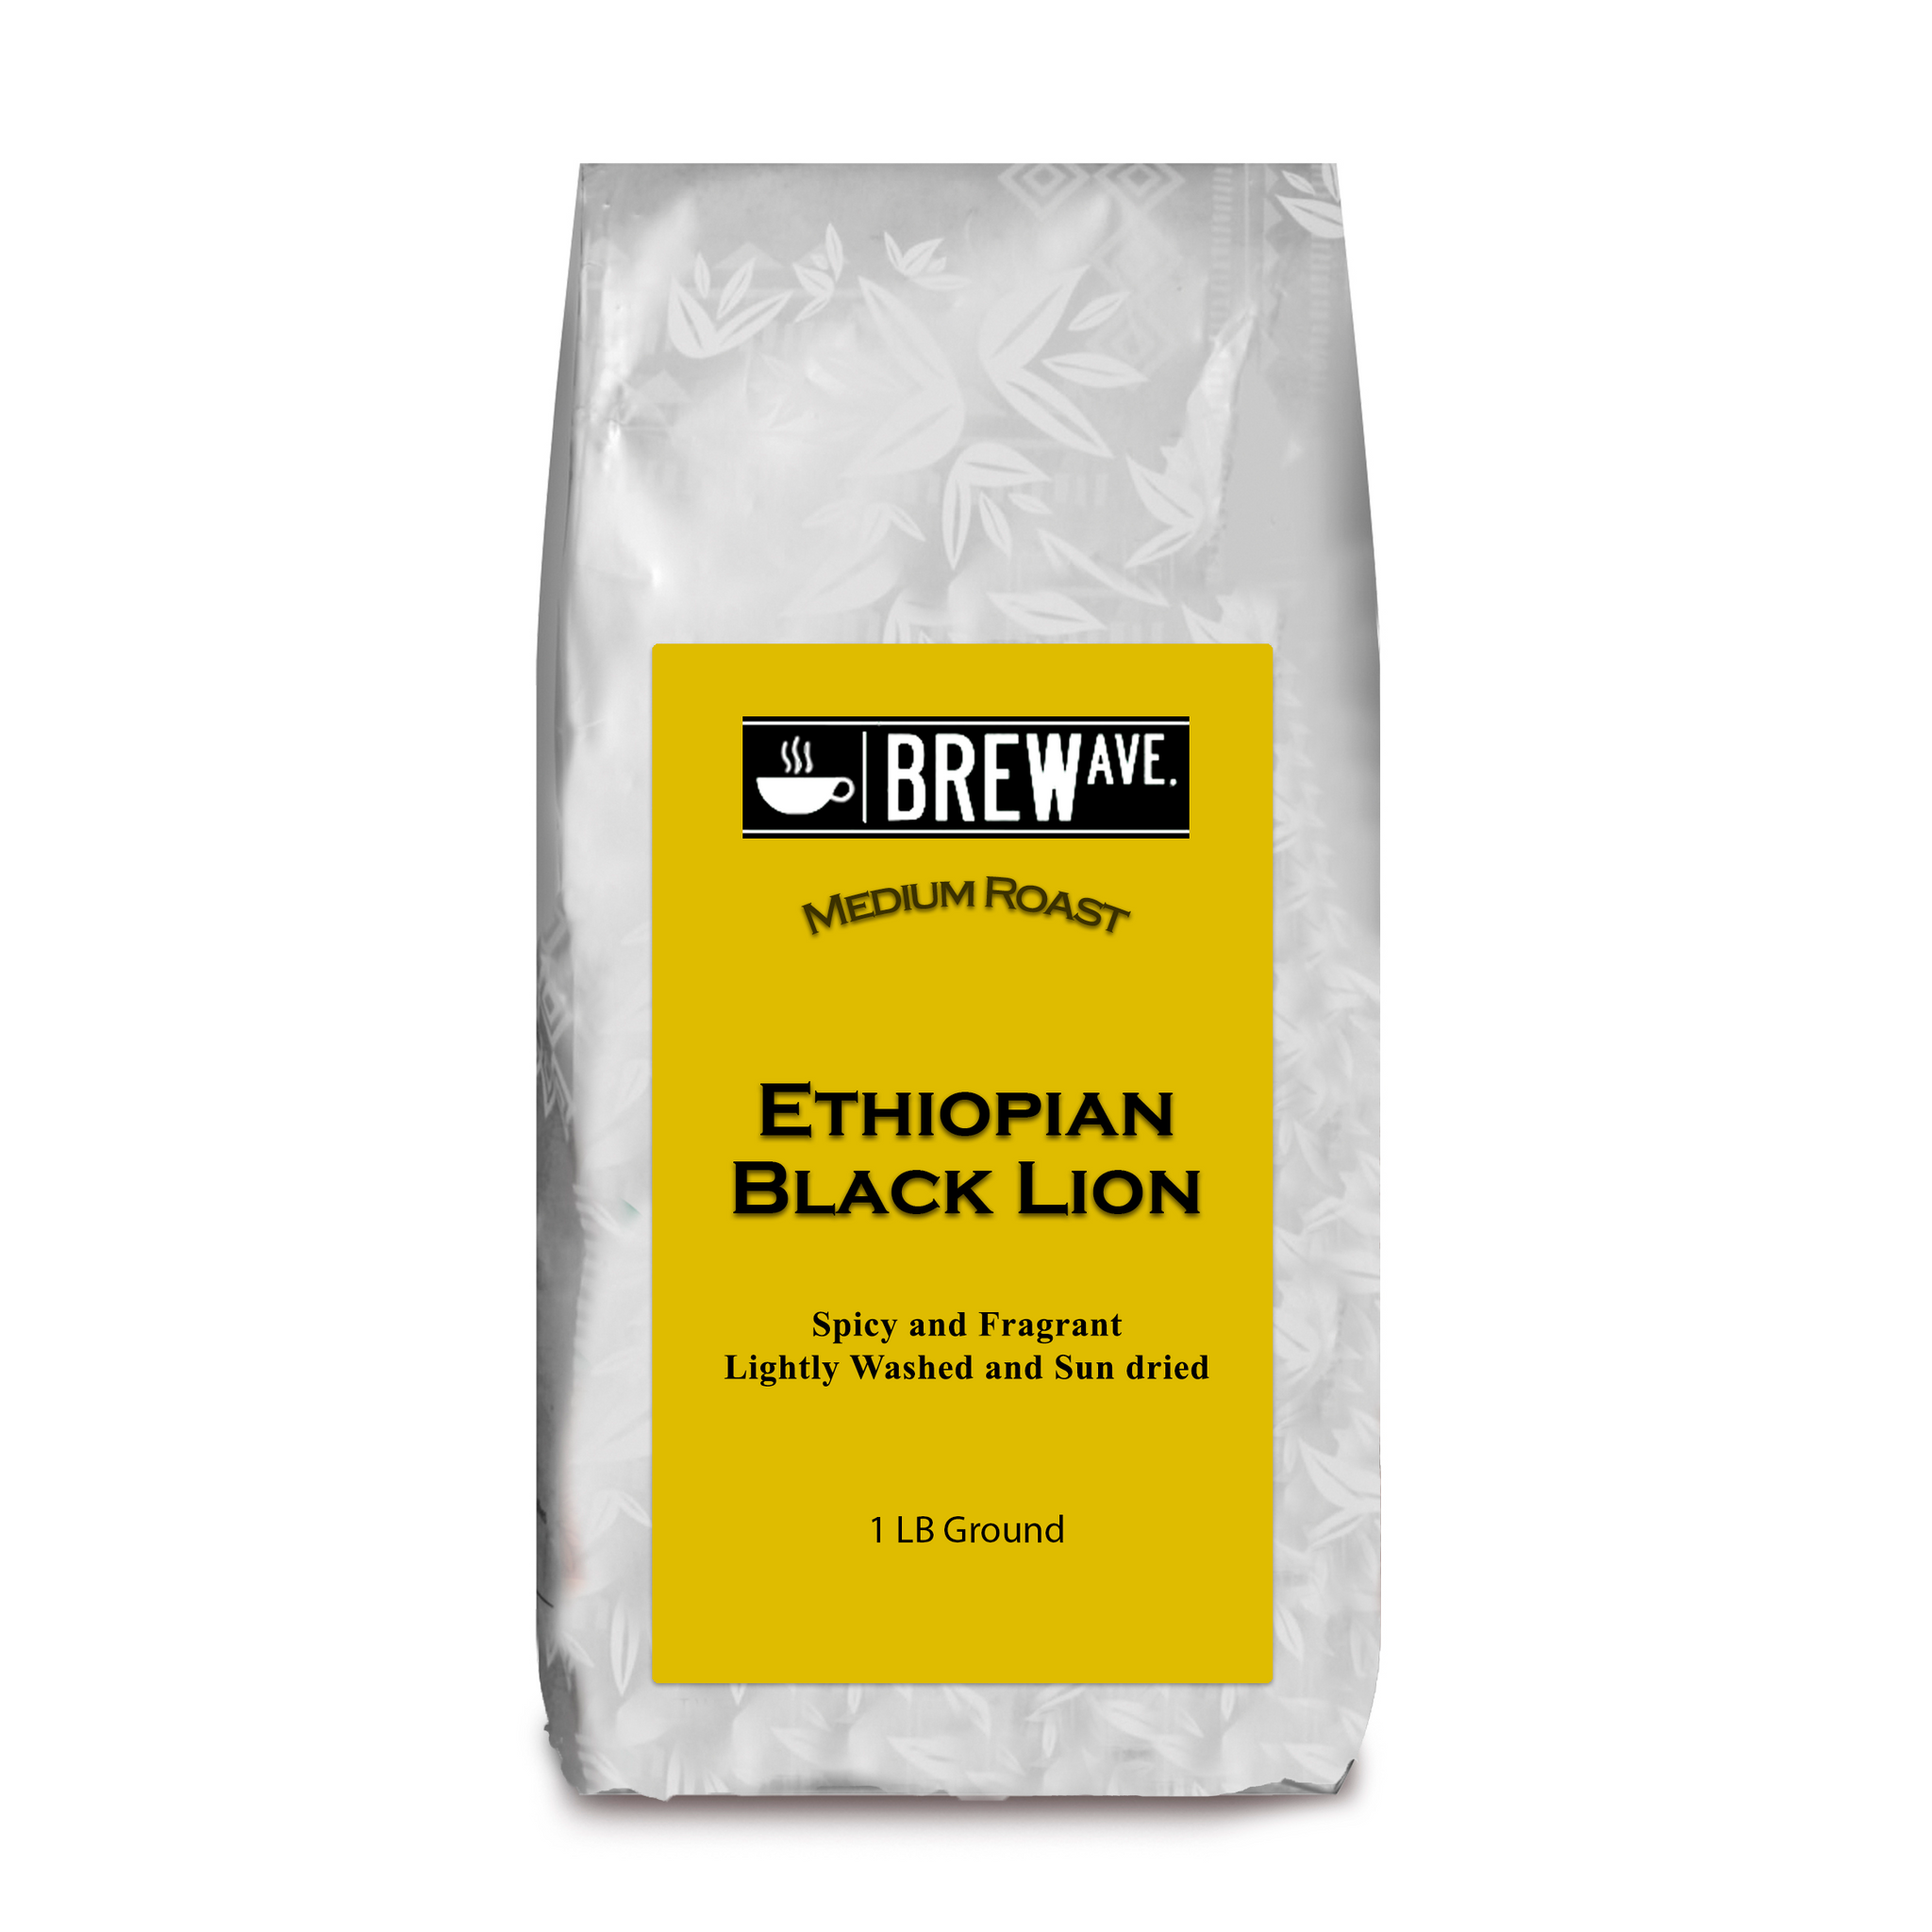 ETHIOPIAN BLACK LION MEDIUM ROAST 1 LB. GROUND